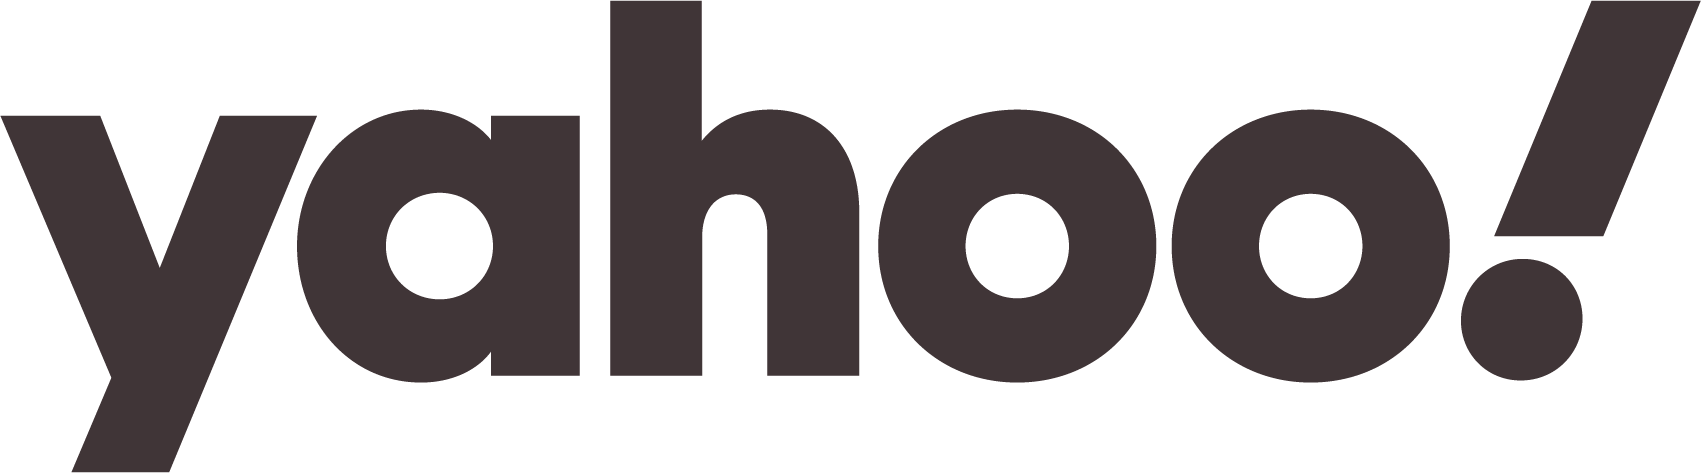 yahoo-logo-dark